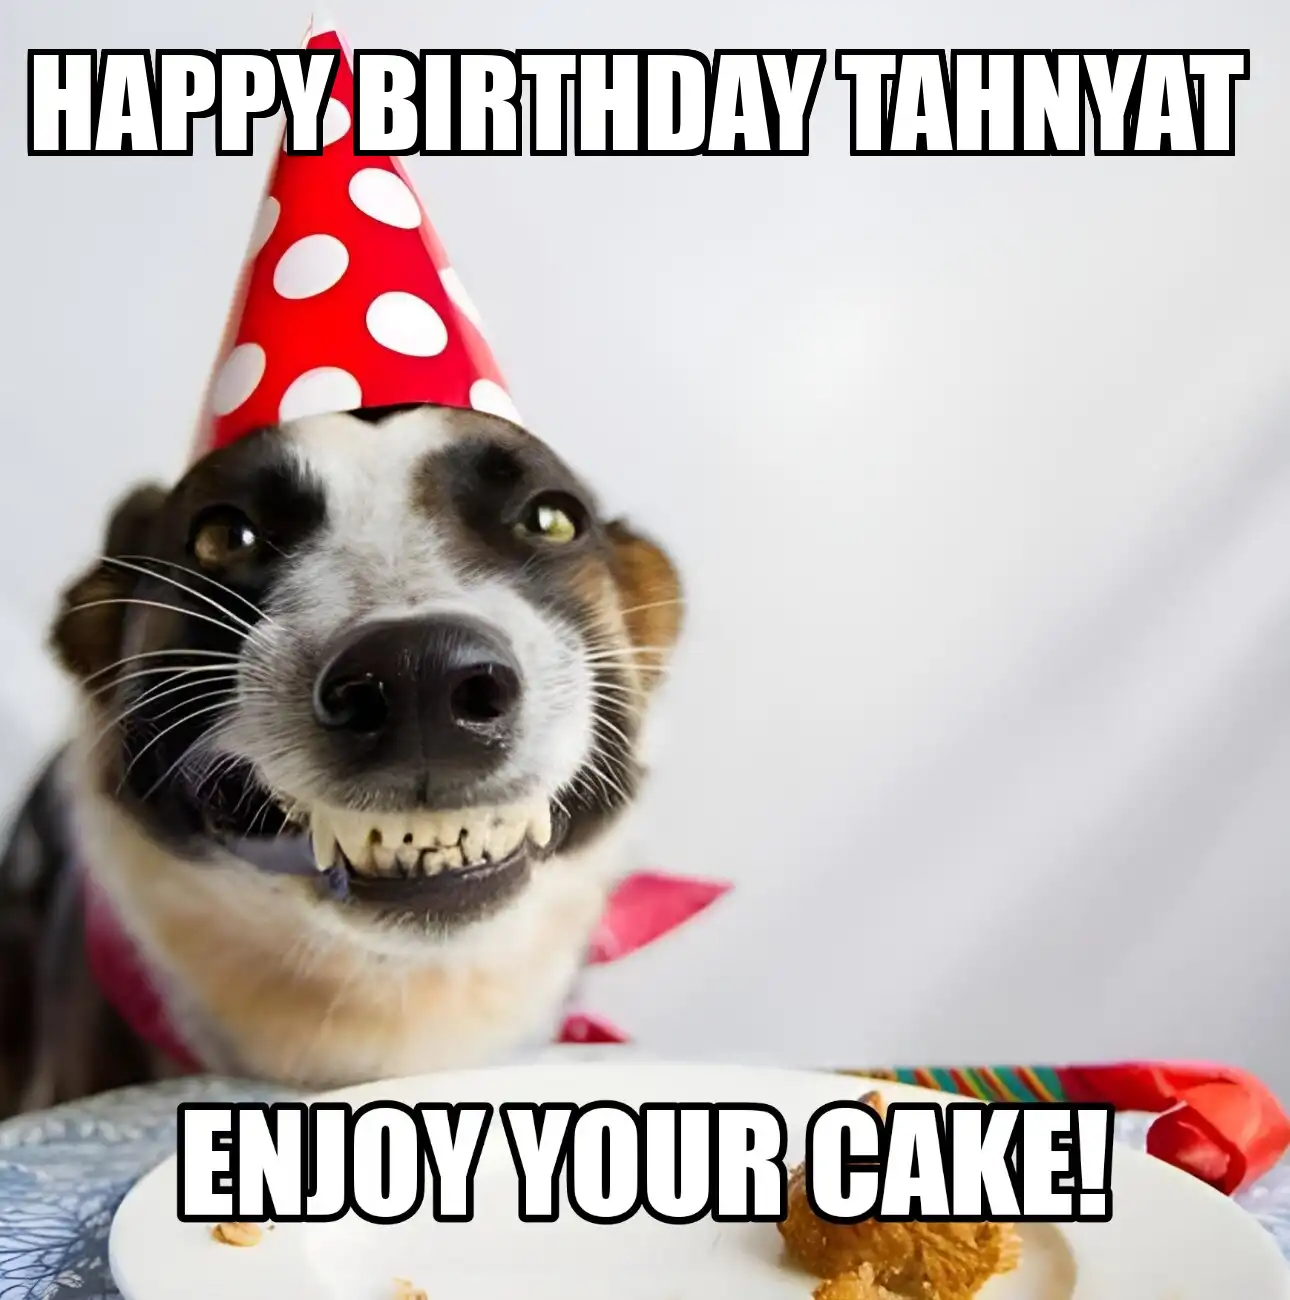 Happy Birthday Tahnyat Enjoy Your Cake Dog Meme